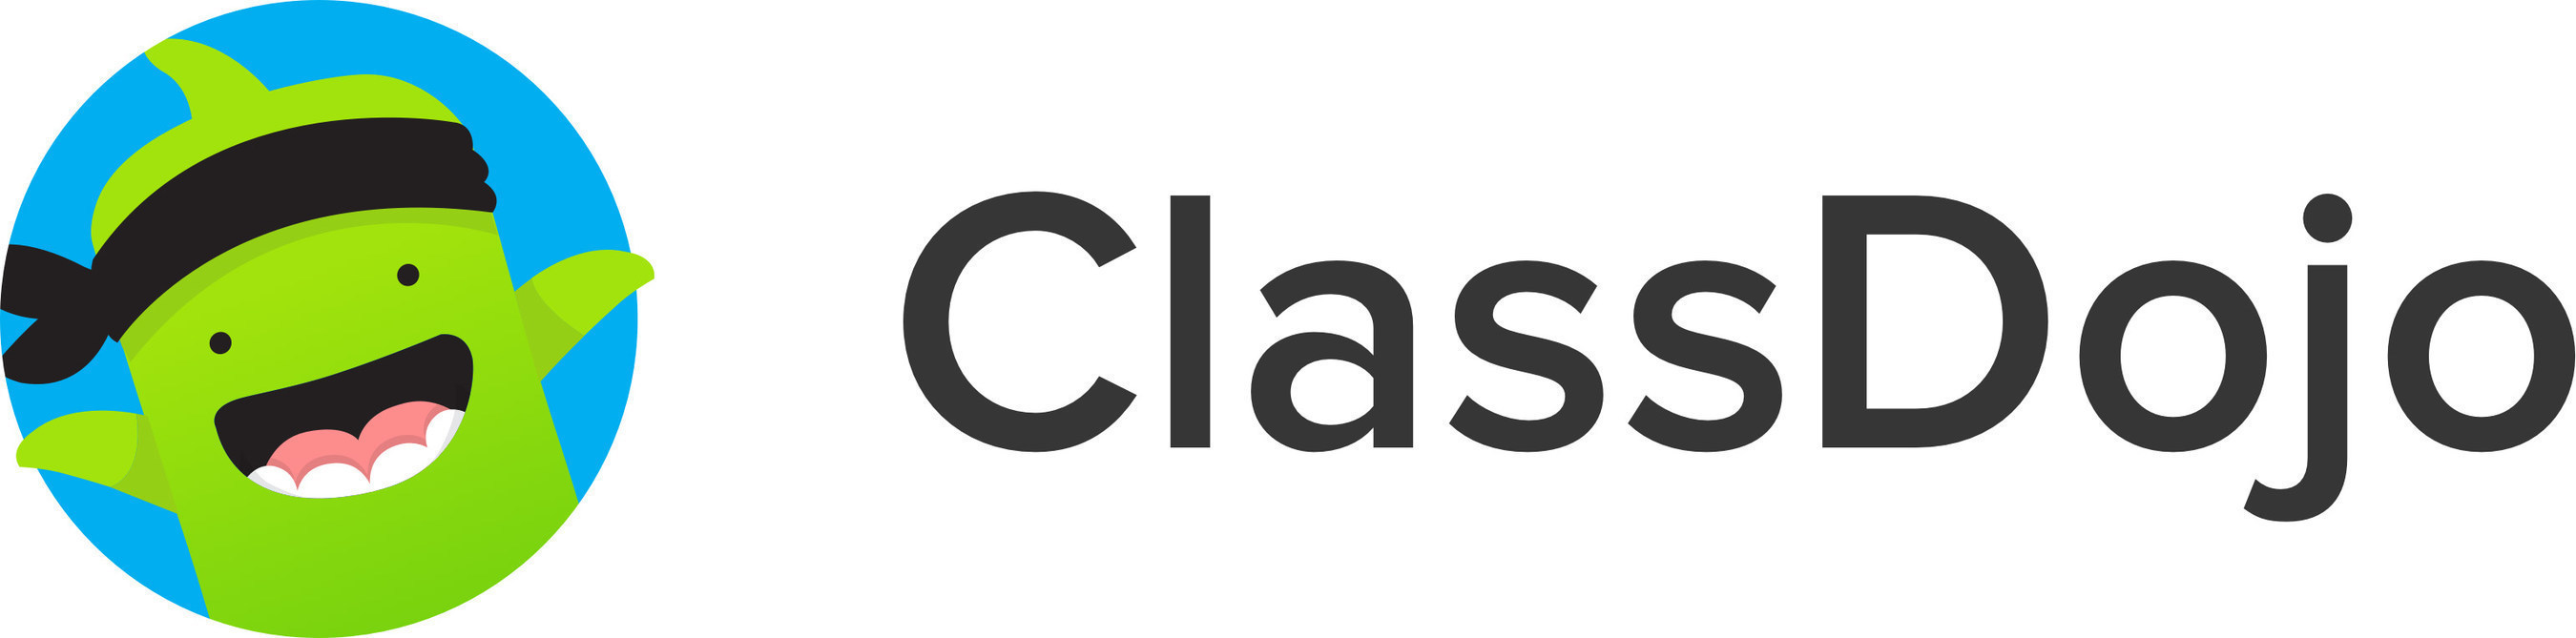 ClassDojo logo